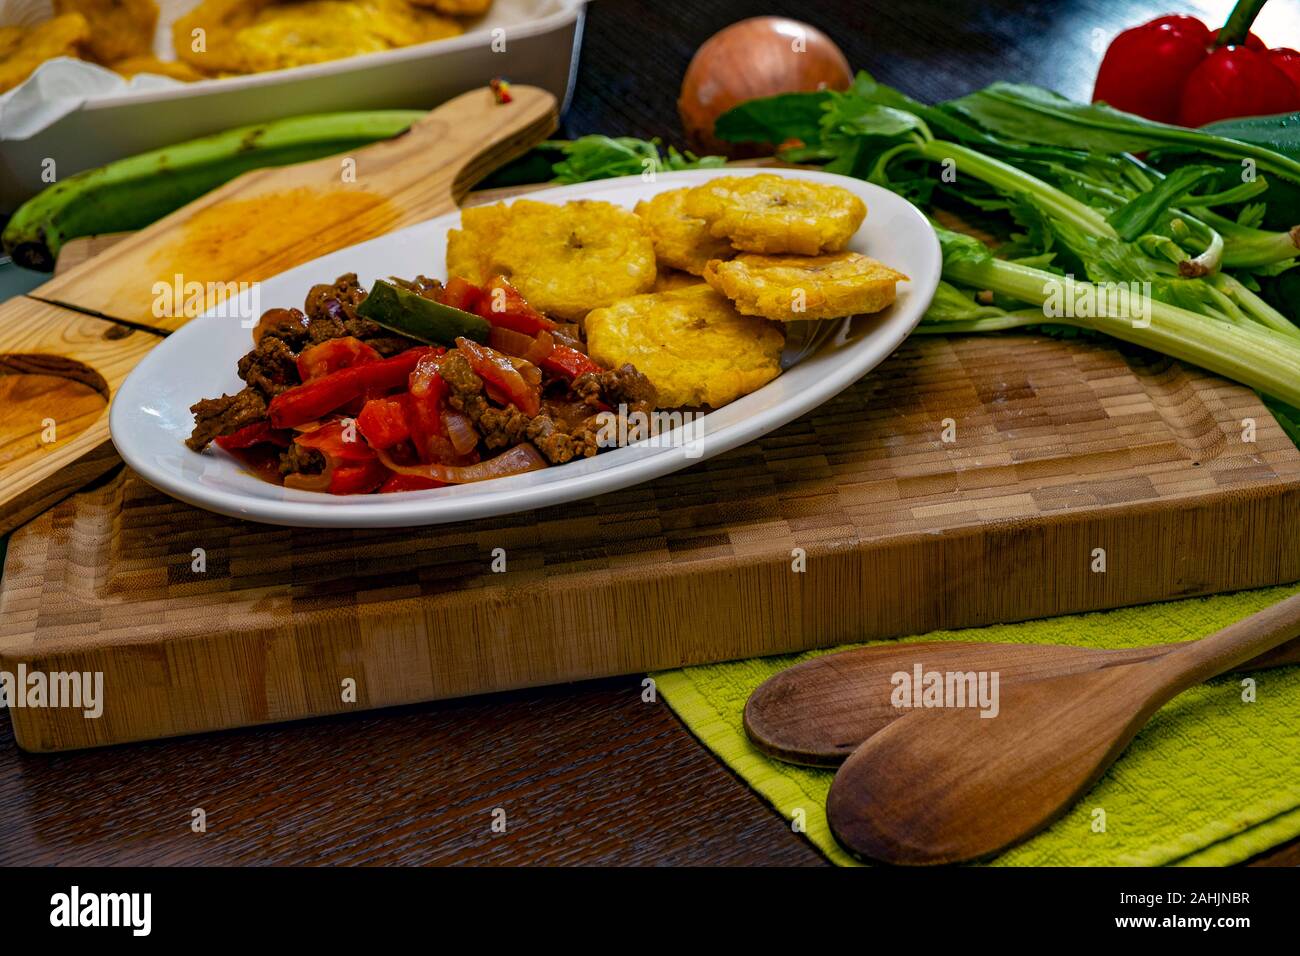 Steak haché ou Bistec Picao et patacones ou tostones sont frites de plantain vert, faites avec des tranches de bananes, de vert de la nourriture typique, Panamá Panamá Banque D'Images